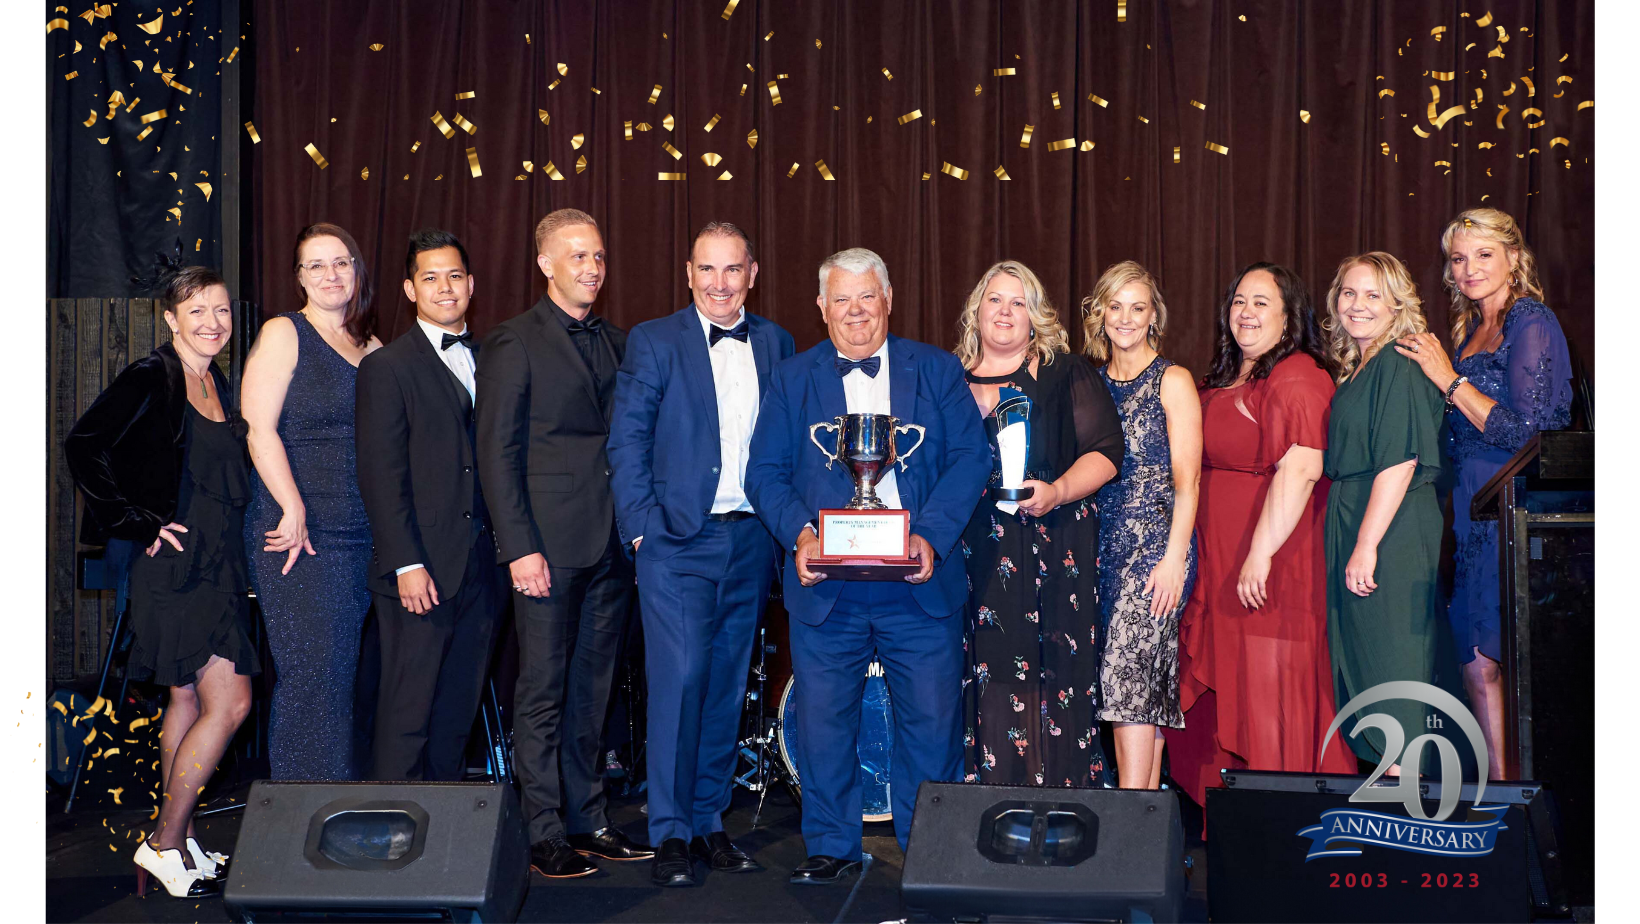 Iron Bridge Property Group Celebrates 20 Years of Providing Award-Winning Property Services